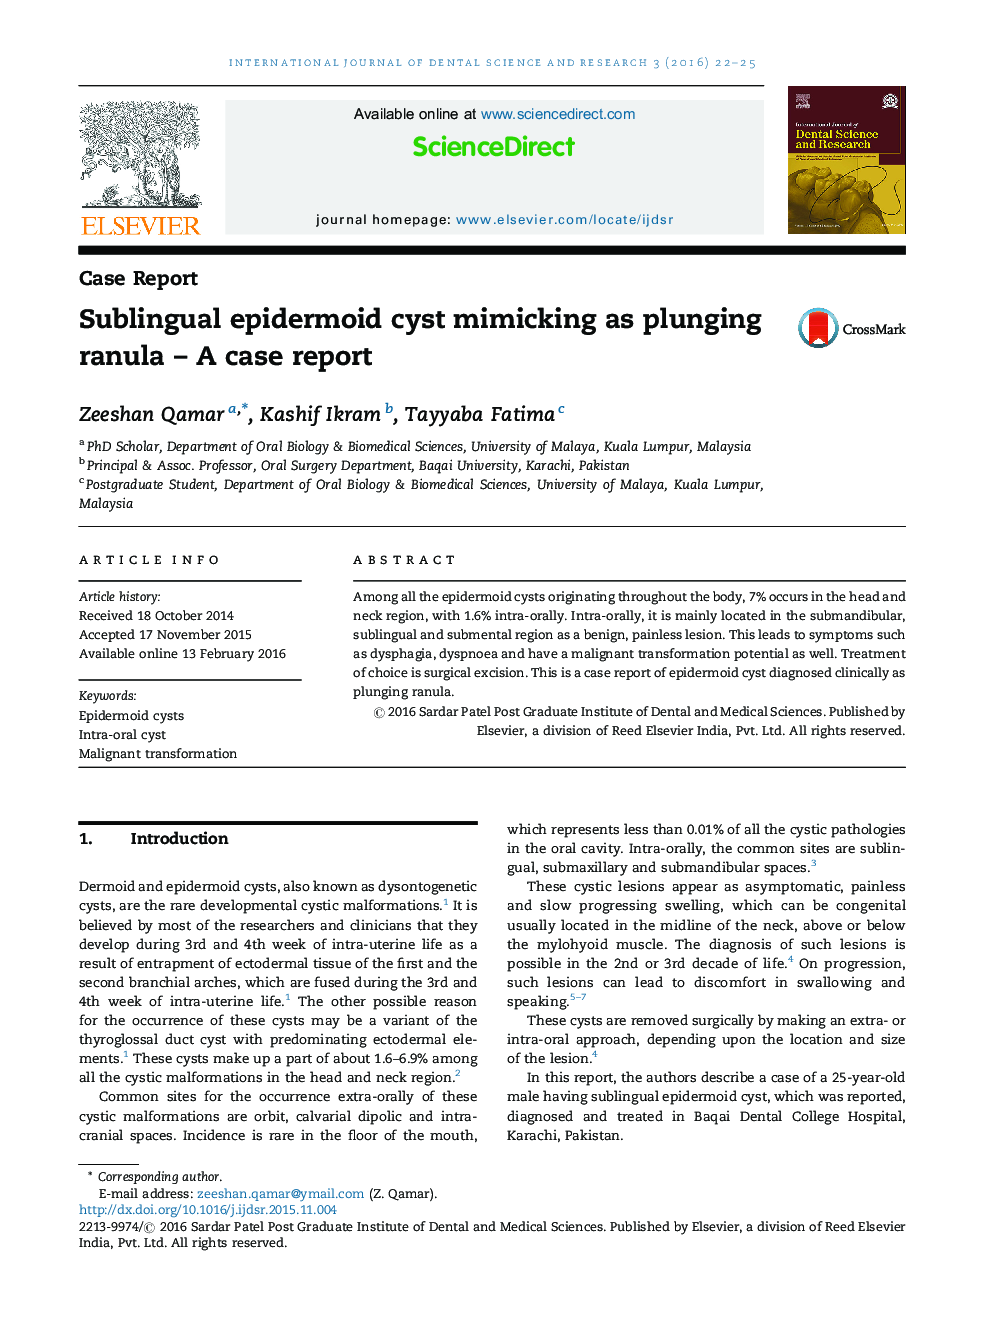 تقلید کیست epidermoid زیرزبانی به عنوان ranula غوطه وری؛ گزارش موردی